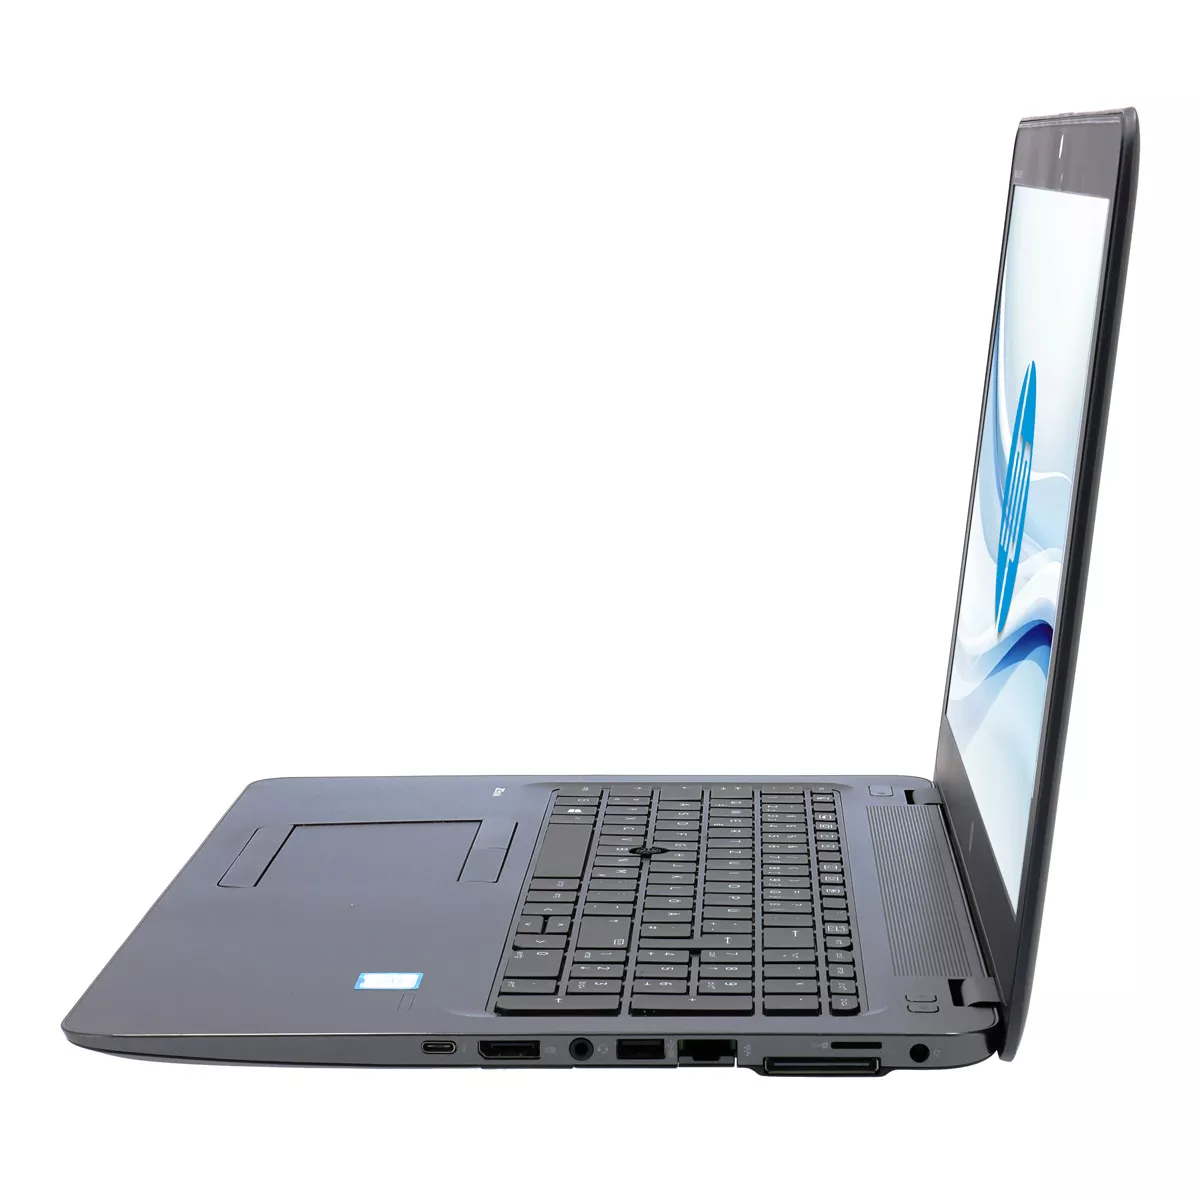 HP ZBook 15u G3 Core i7 6500U AMD FirePro W4190M 16 GB 240 GB M.2 SSD A